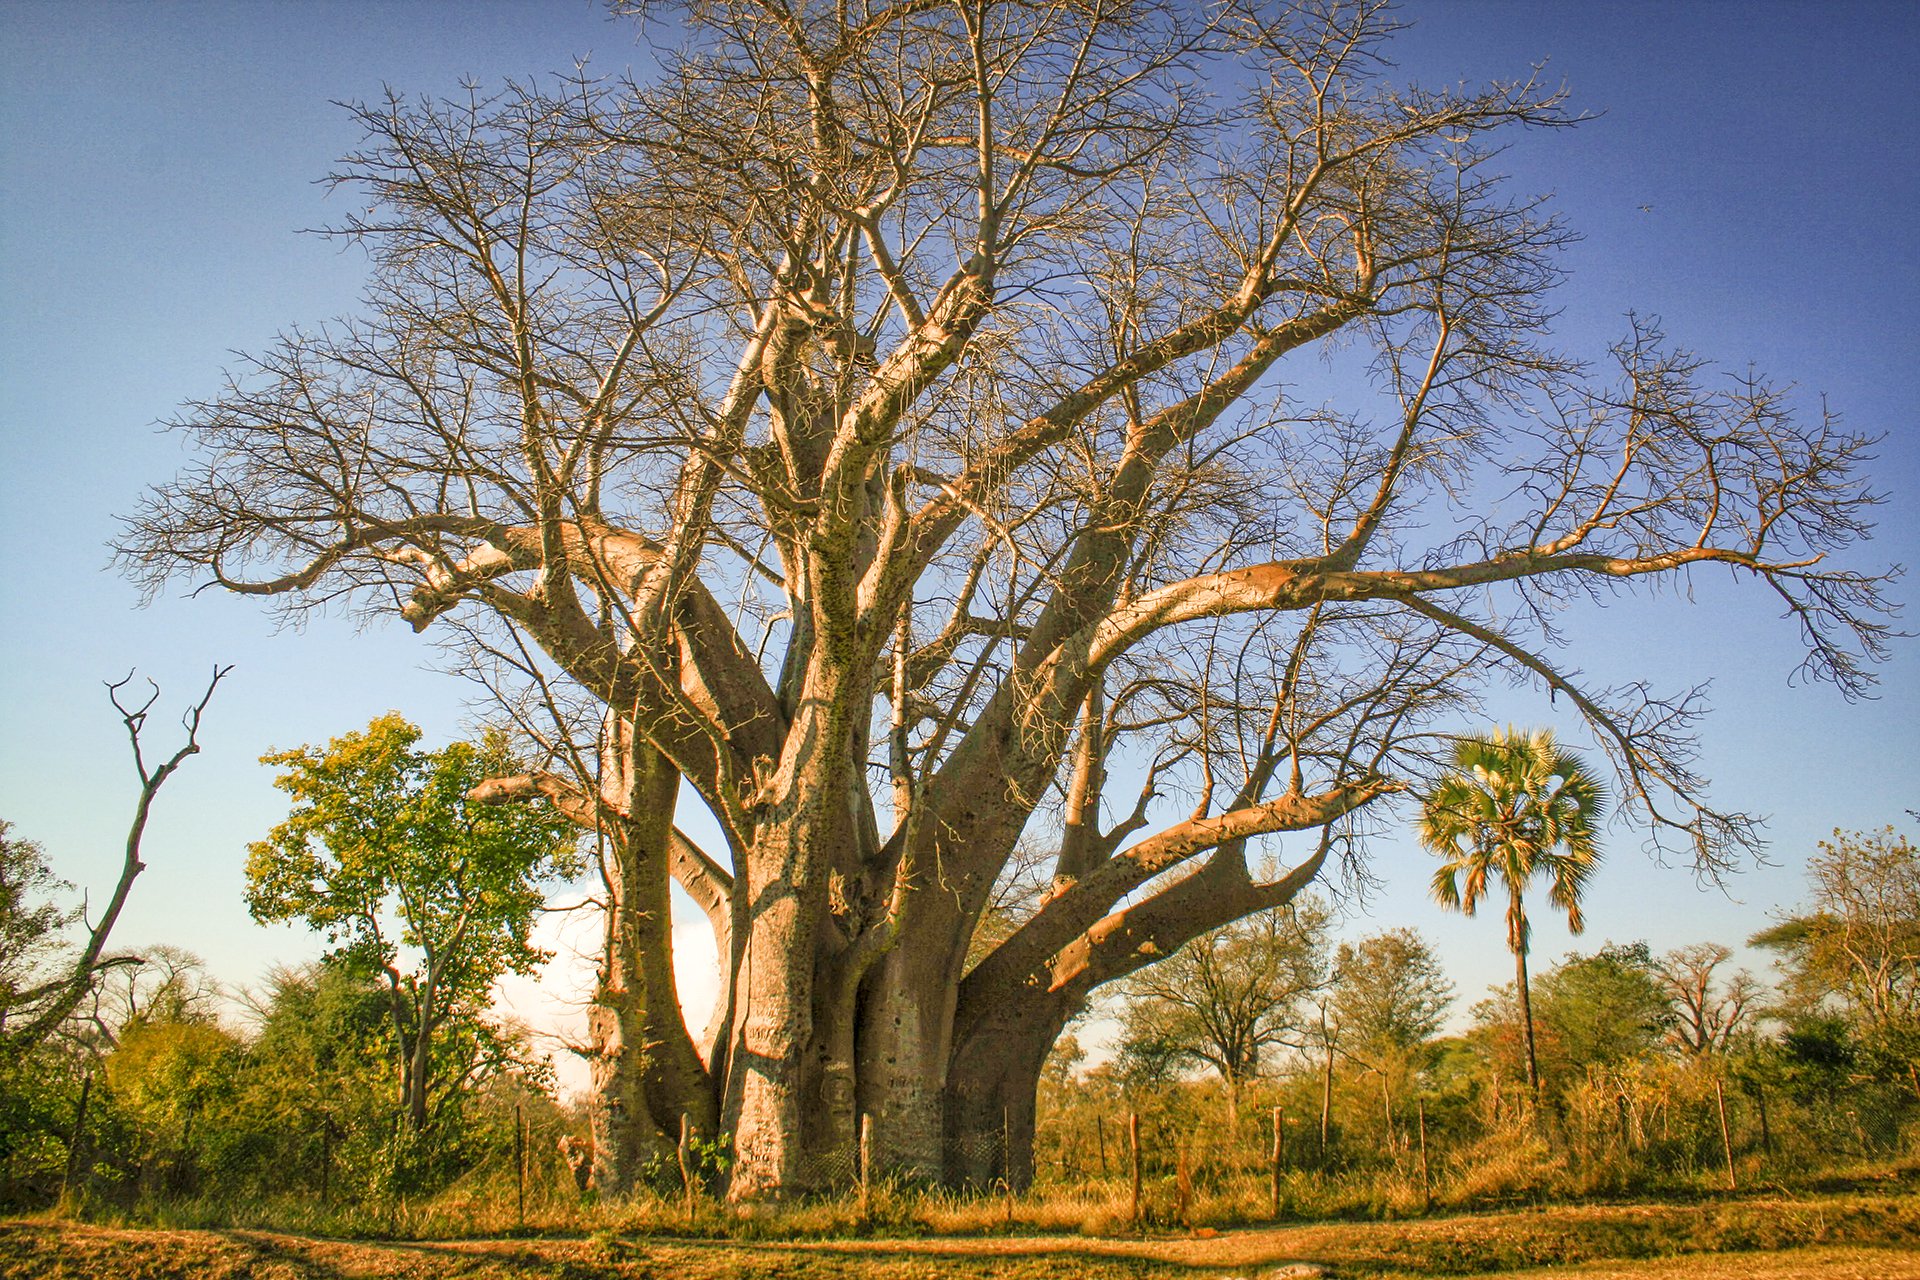 Ба баб. Баобаб Африканский. Баобаб в Зимбабве. Намибия Акация баобаб. Баобаб дерево.